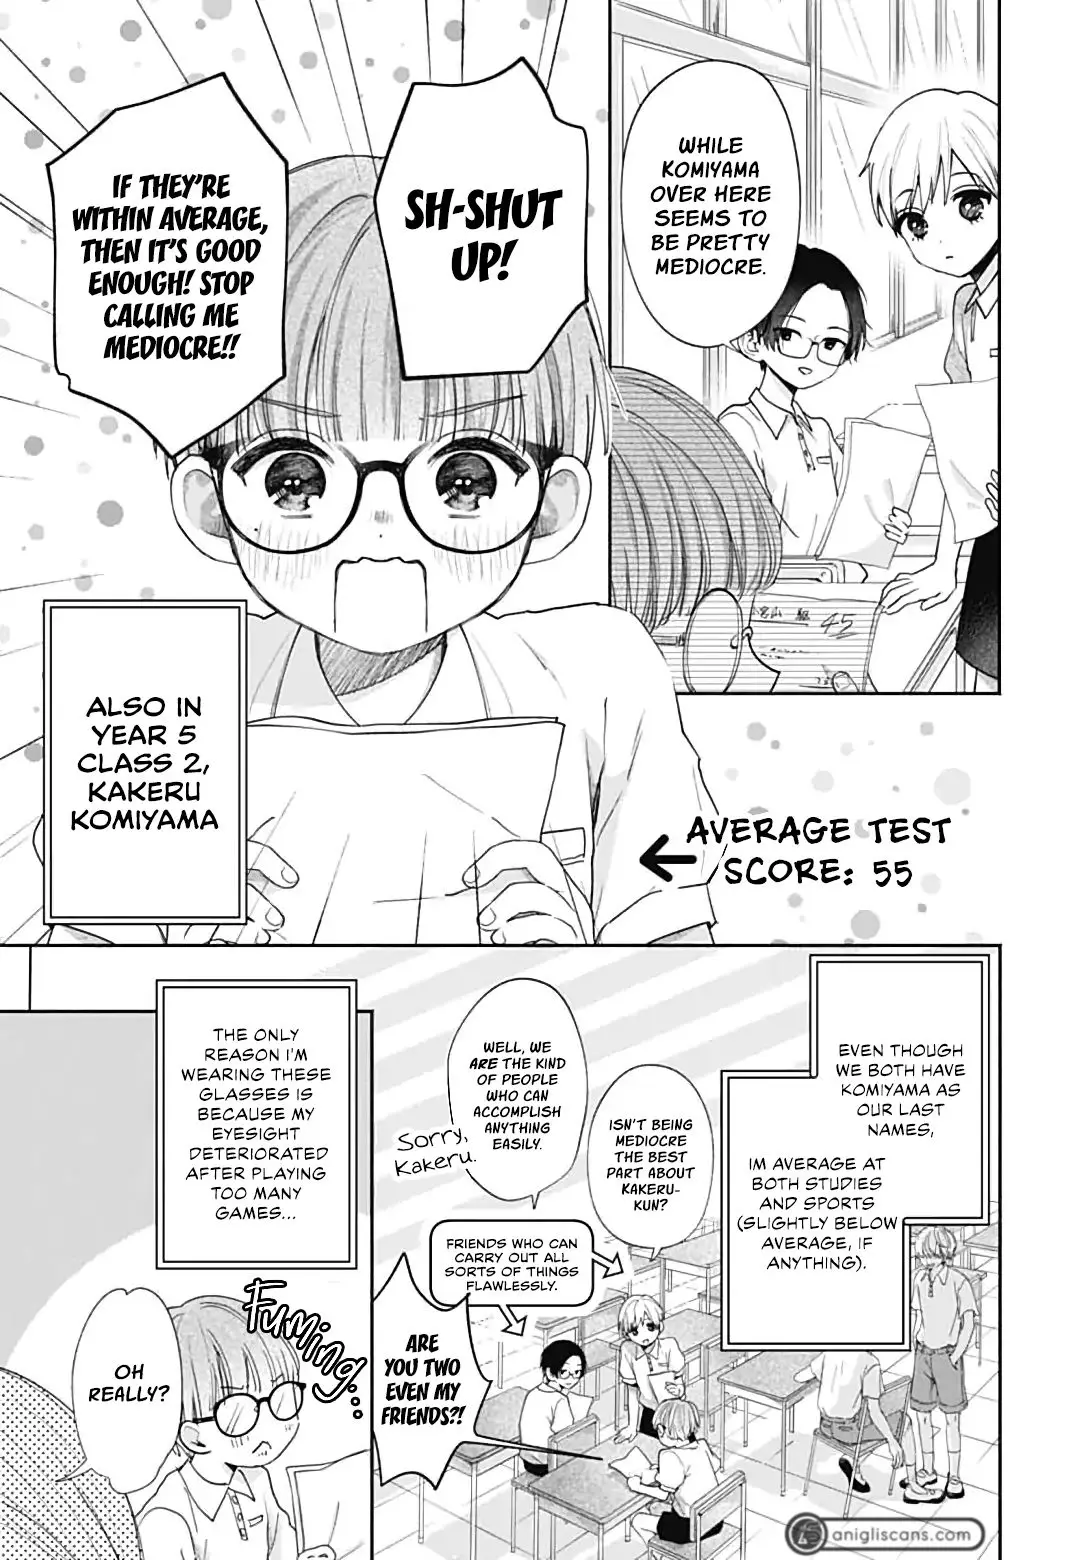 I Hate Komiyama - 1 page 4-607f3190